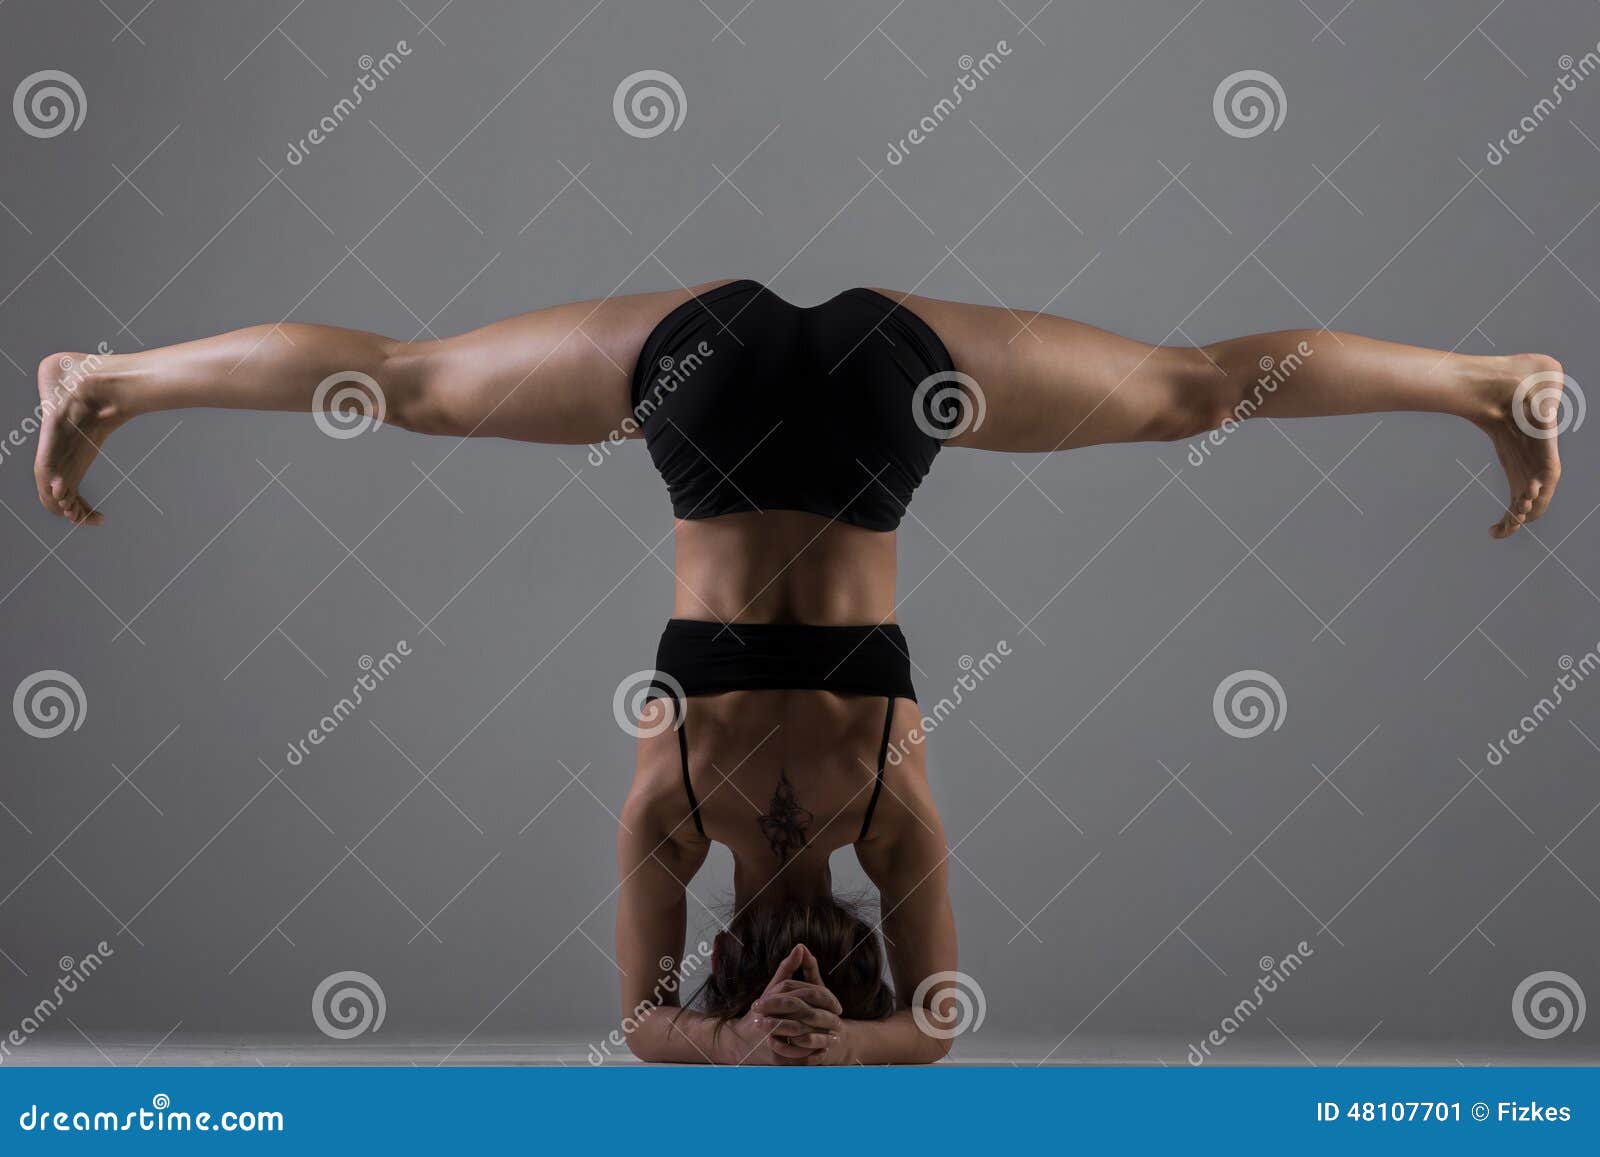 yoga girl in asana